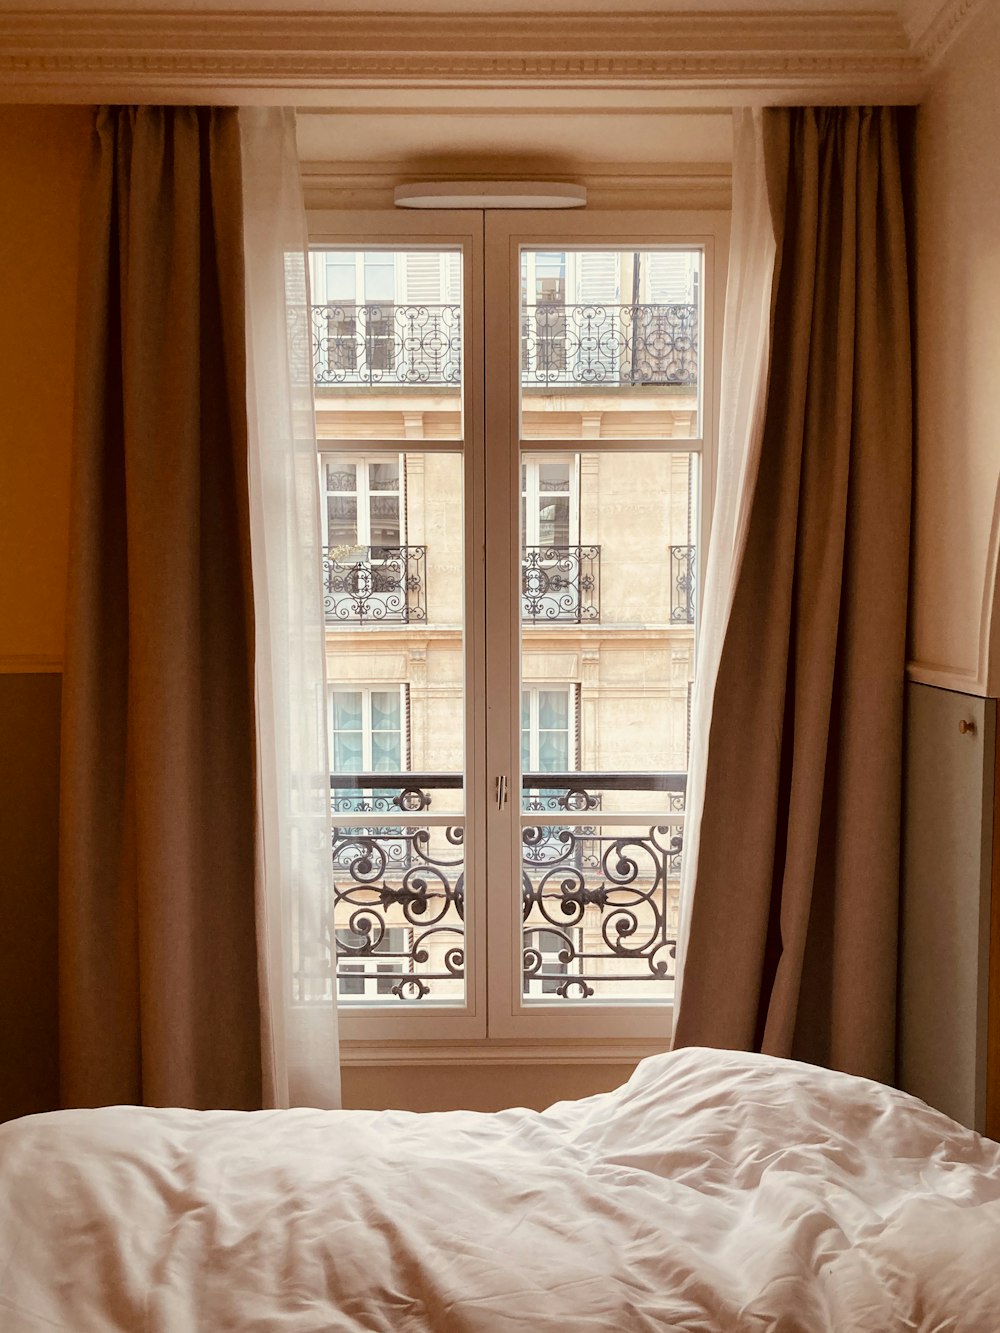 ein Bett neben einem Fenster in einem Schlafzimmer